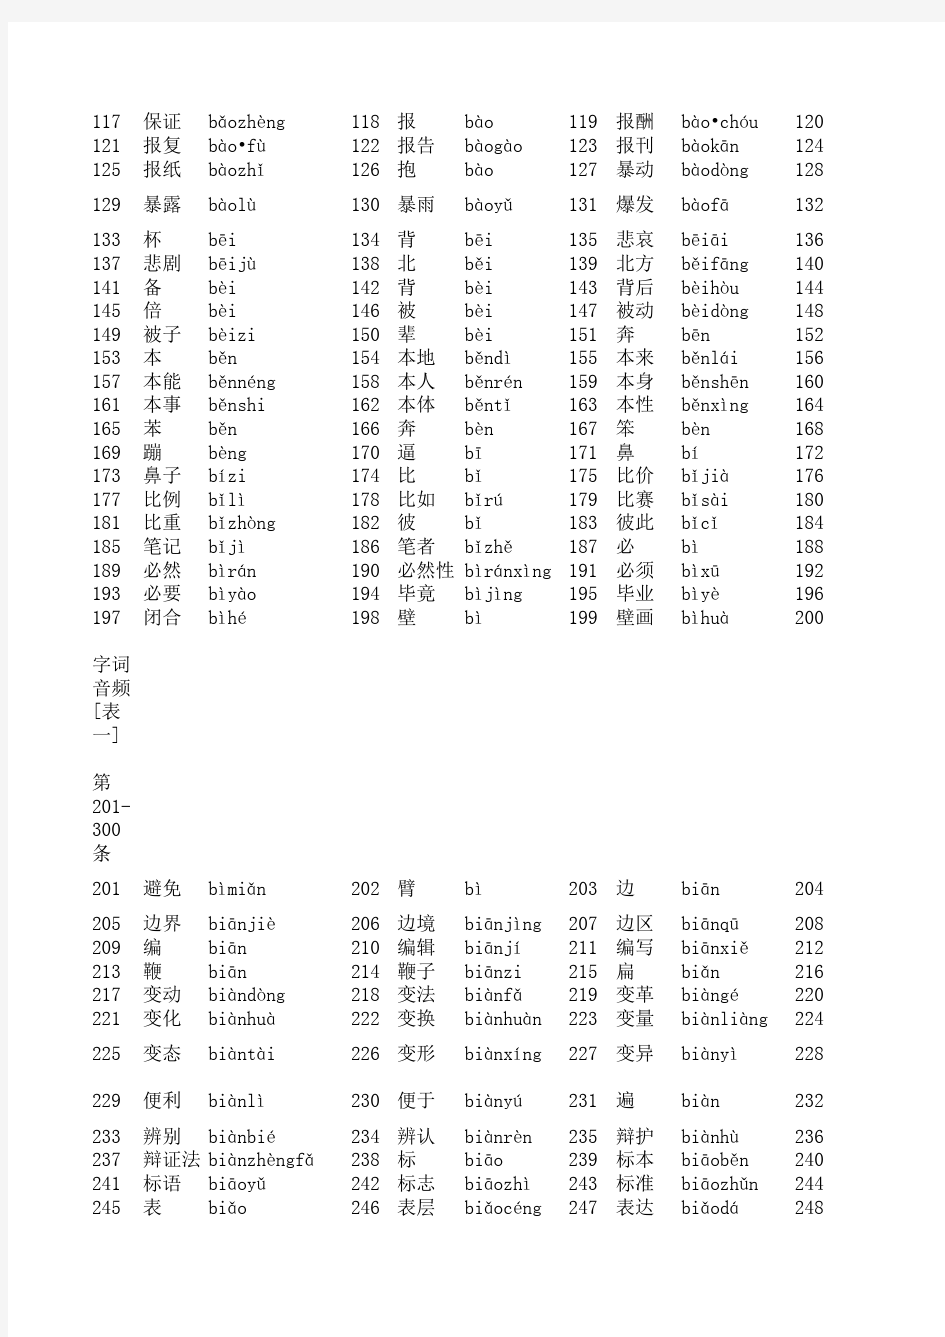 全国普通话水平测试用普通话词语表(表一+表二)